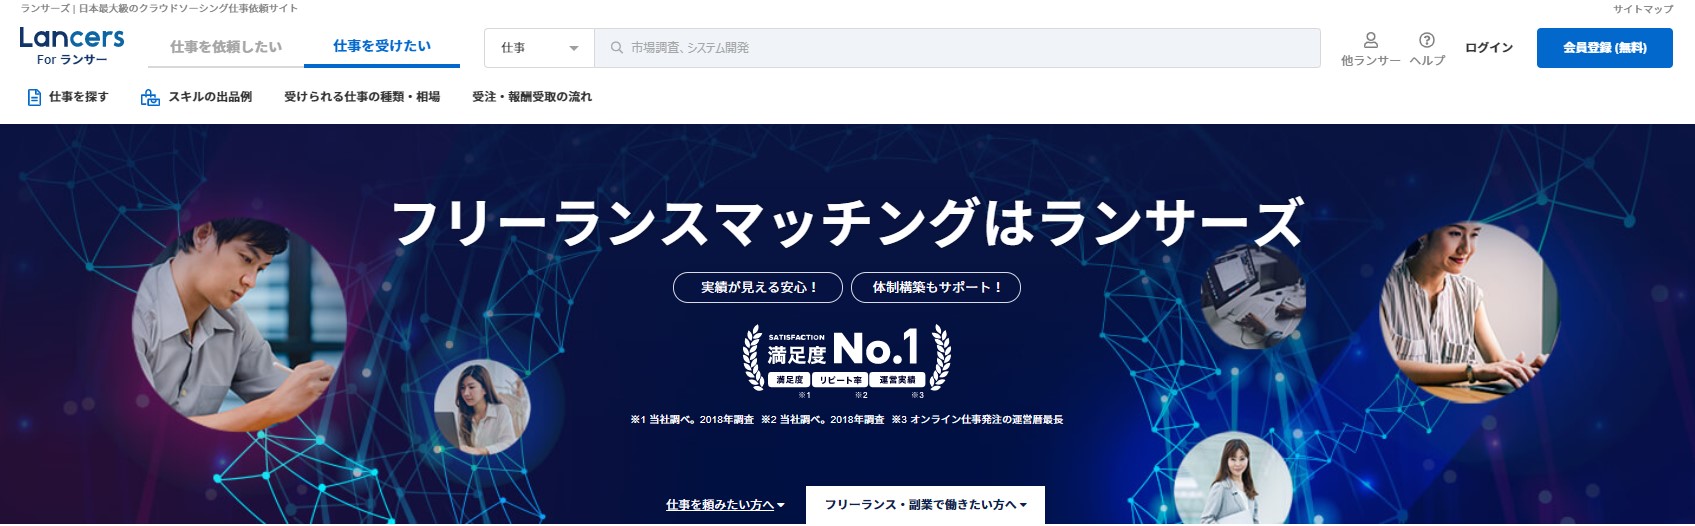 ランサーズ | 日本最大級のクラウドソーシング仕事依頼サイト